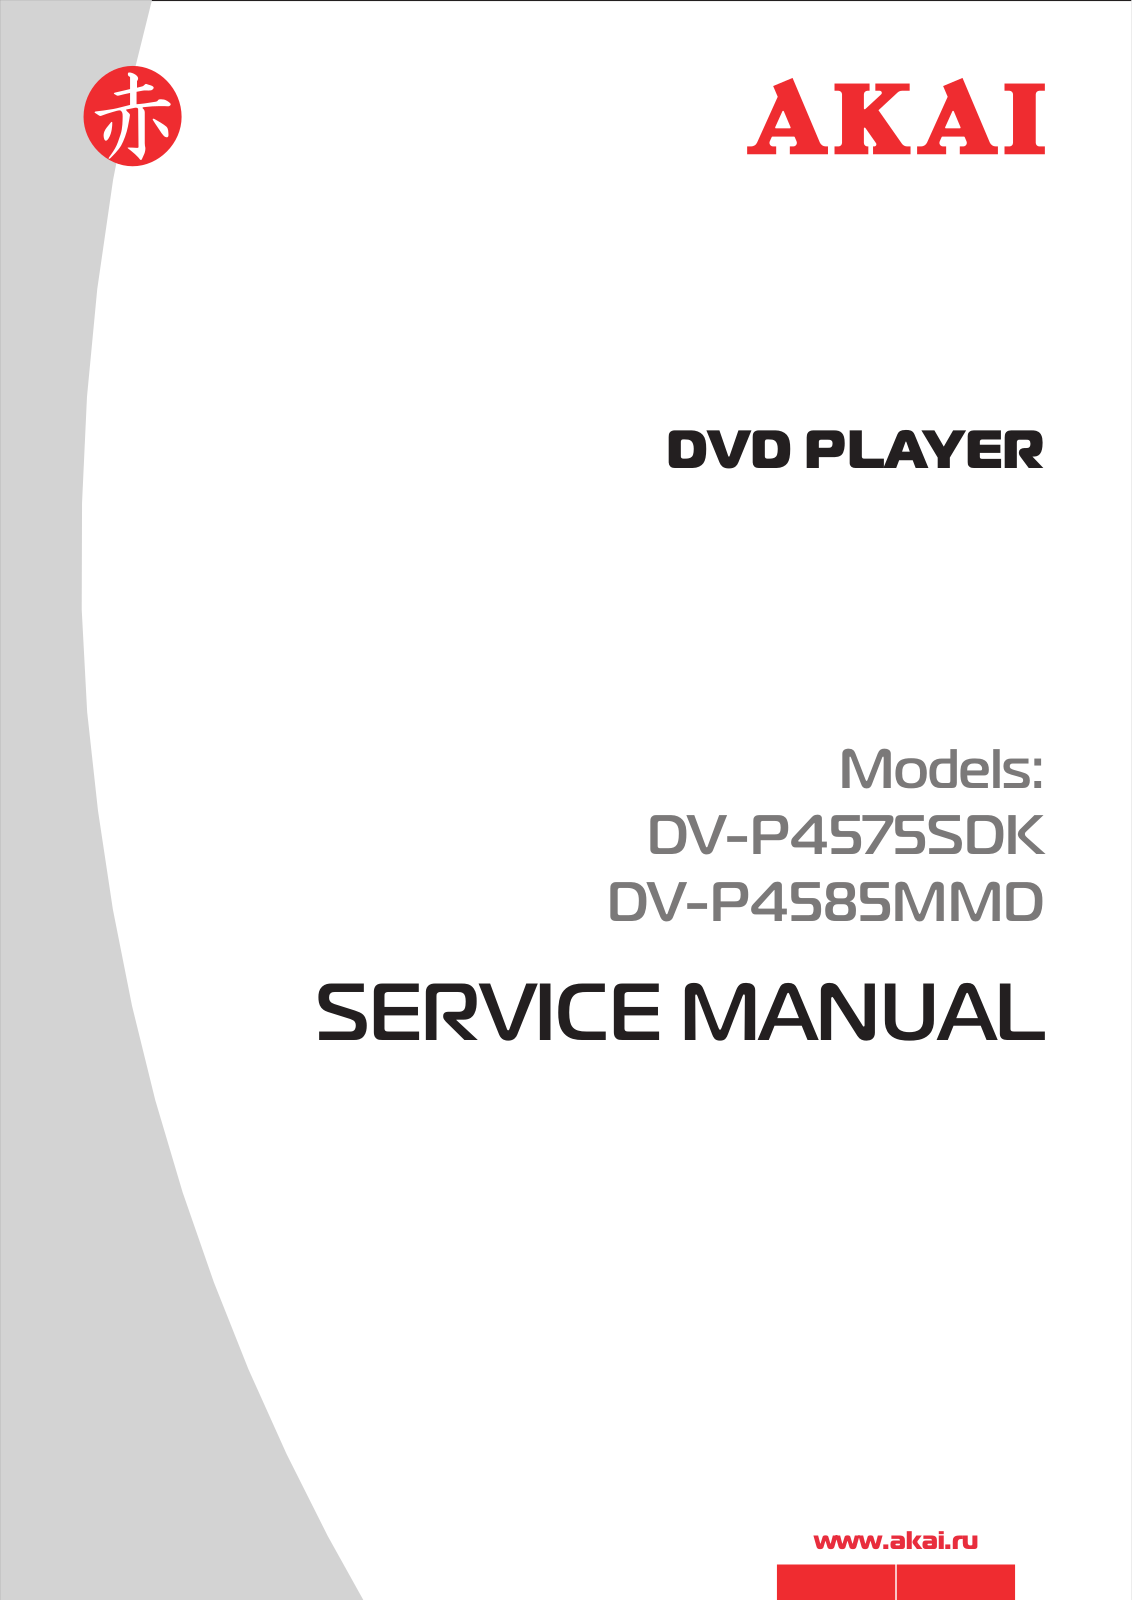 Akai DVP-4575-SDK, DVP-4585-MMD Service manual